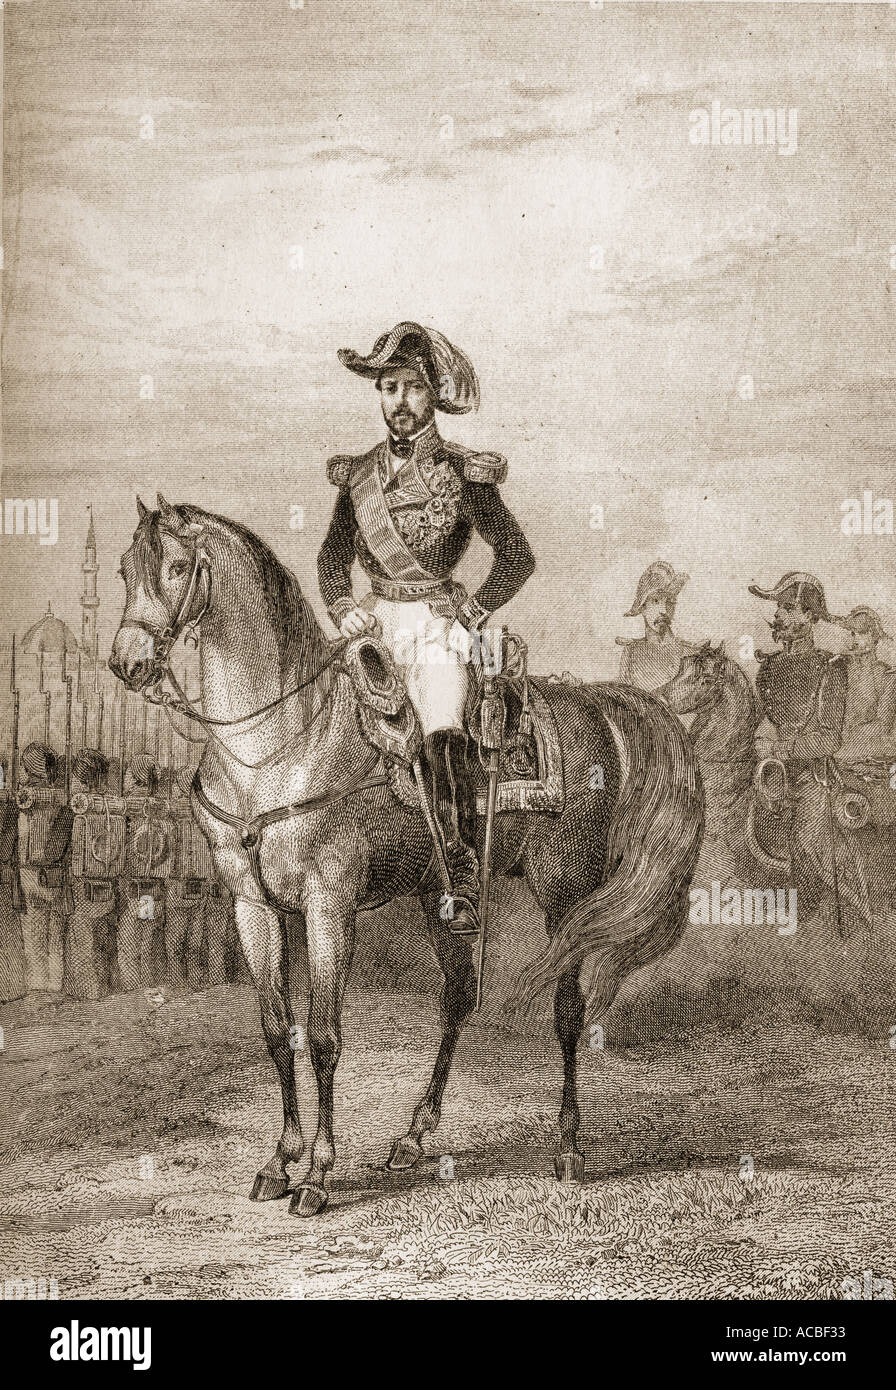 Allgemeine Prim Juan Prim y Prats 1814-1870. Kommandant der Spanischen expedition Mexiko Invasion im Jahre 1861 Stockfoto